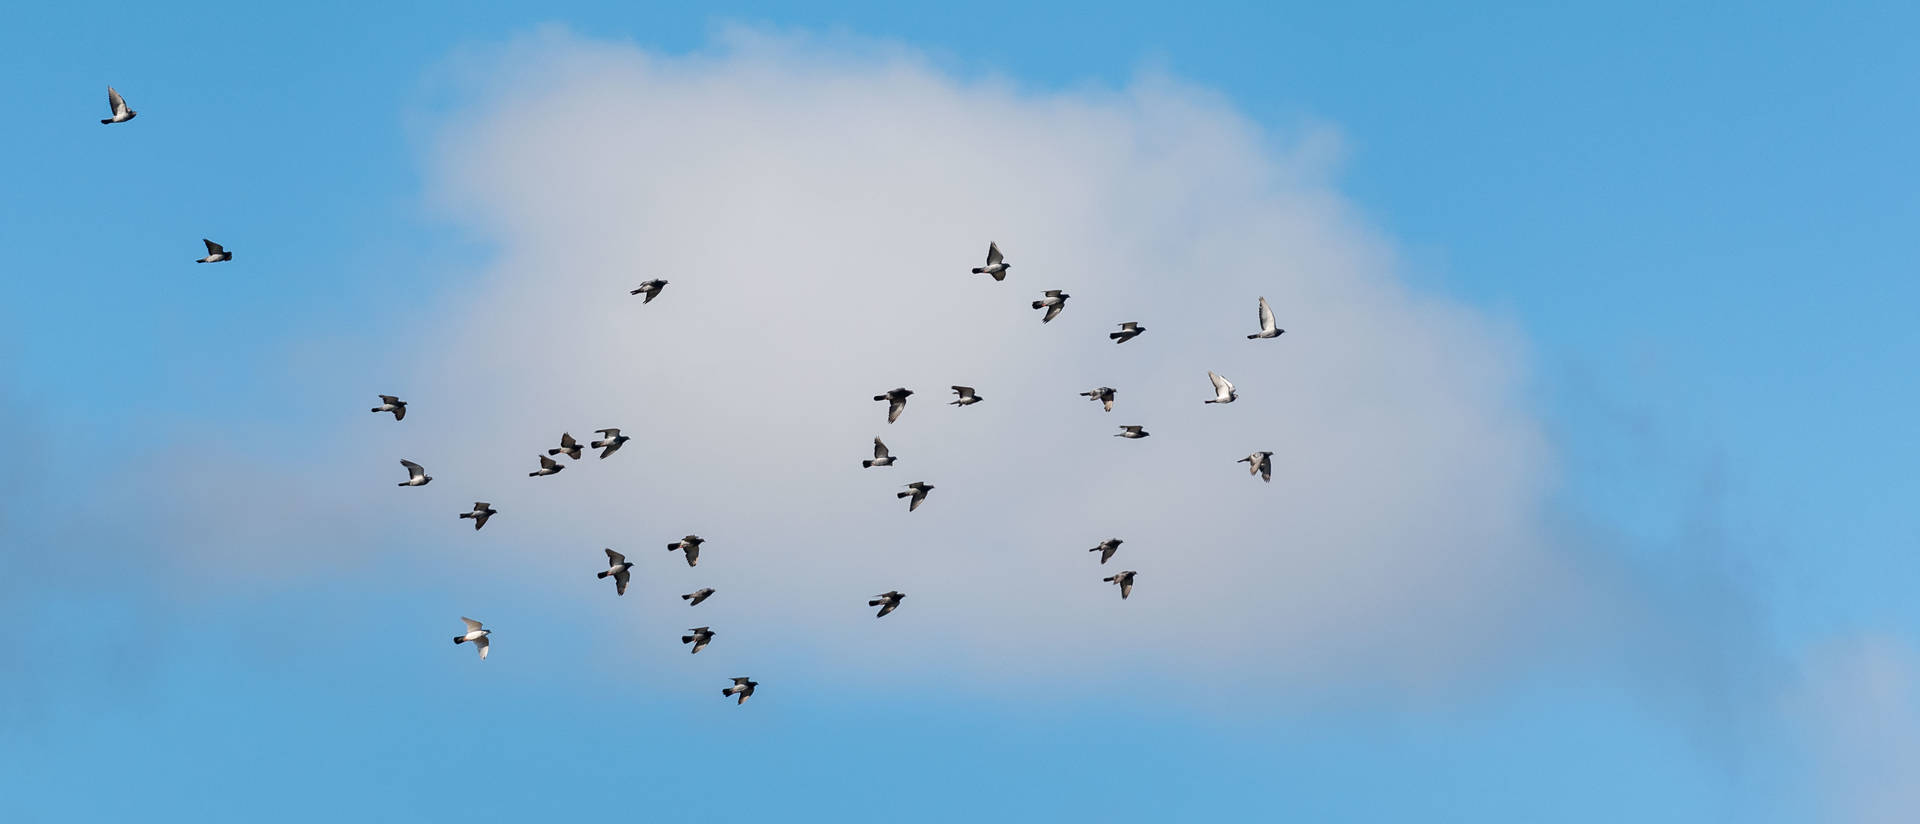 birds in cloud